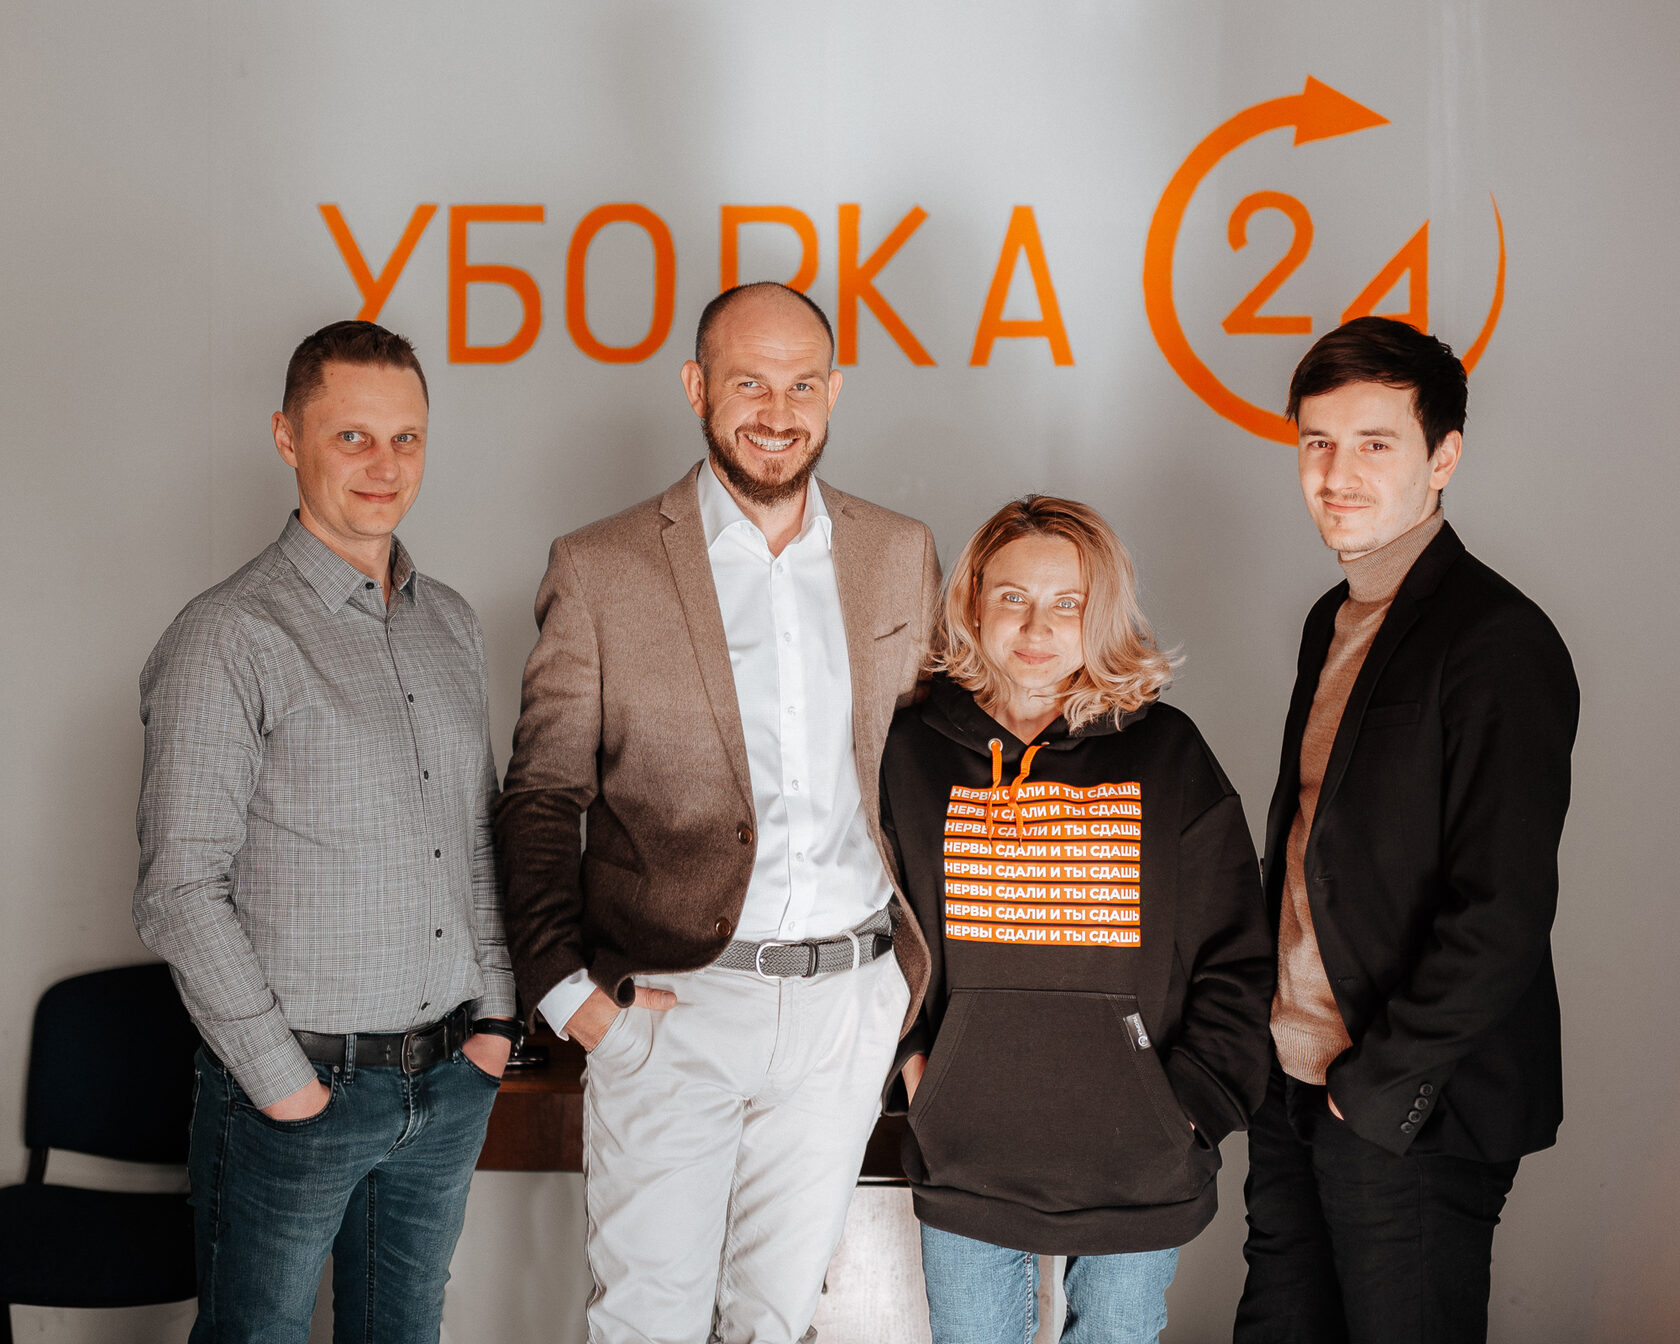 Как открыть клининговую компанию в Украине с нуля. Интервью с основателем клининговой компании «Уборка 24» — Романом Оболончиком